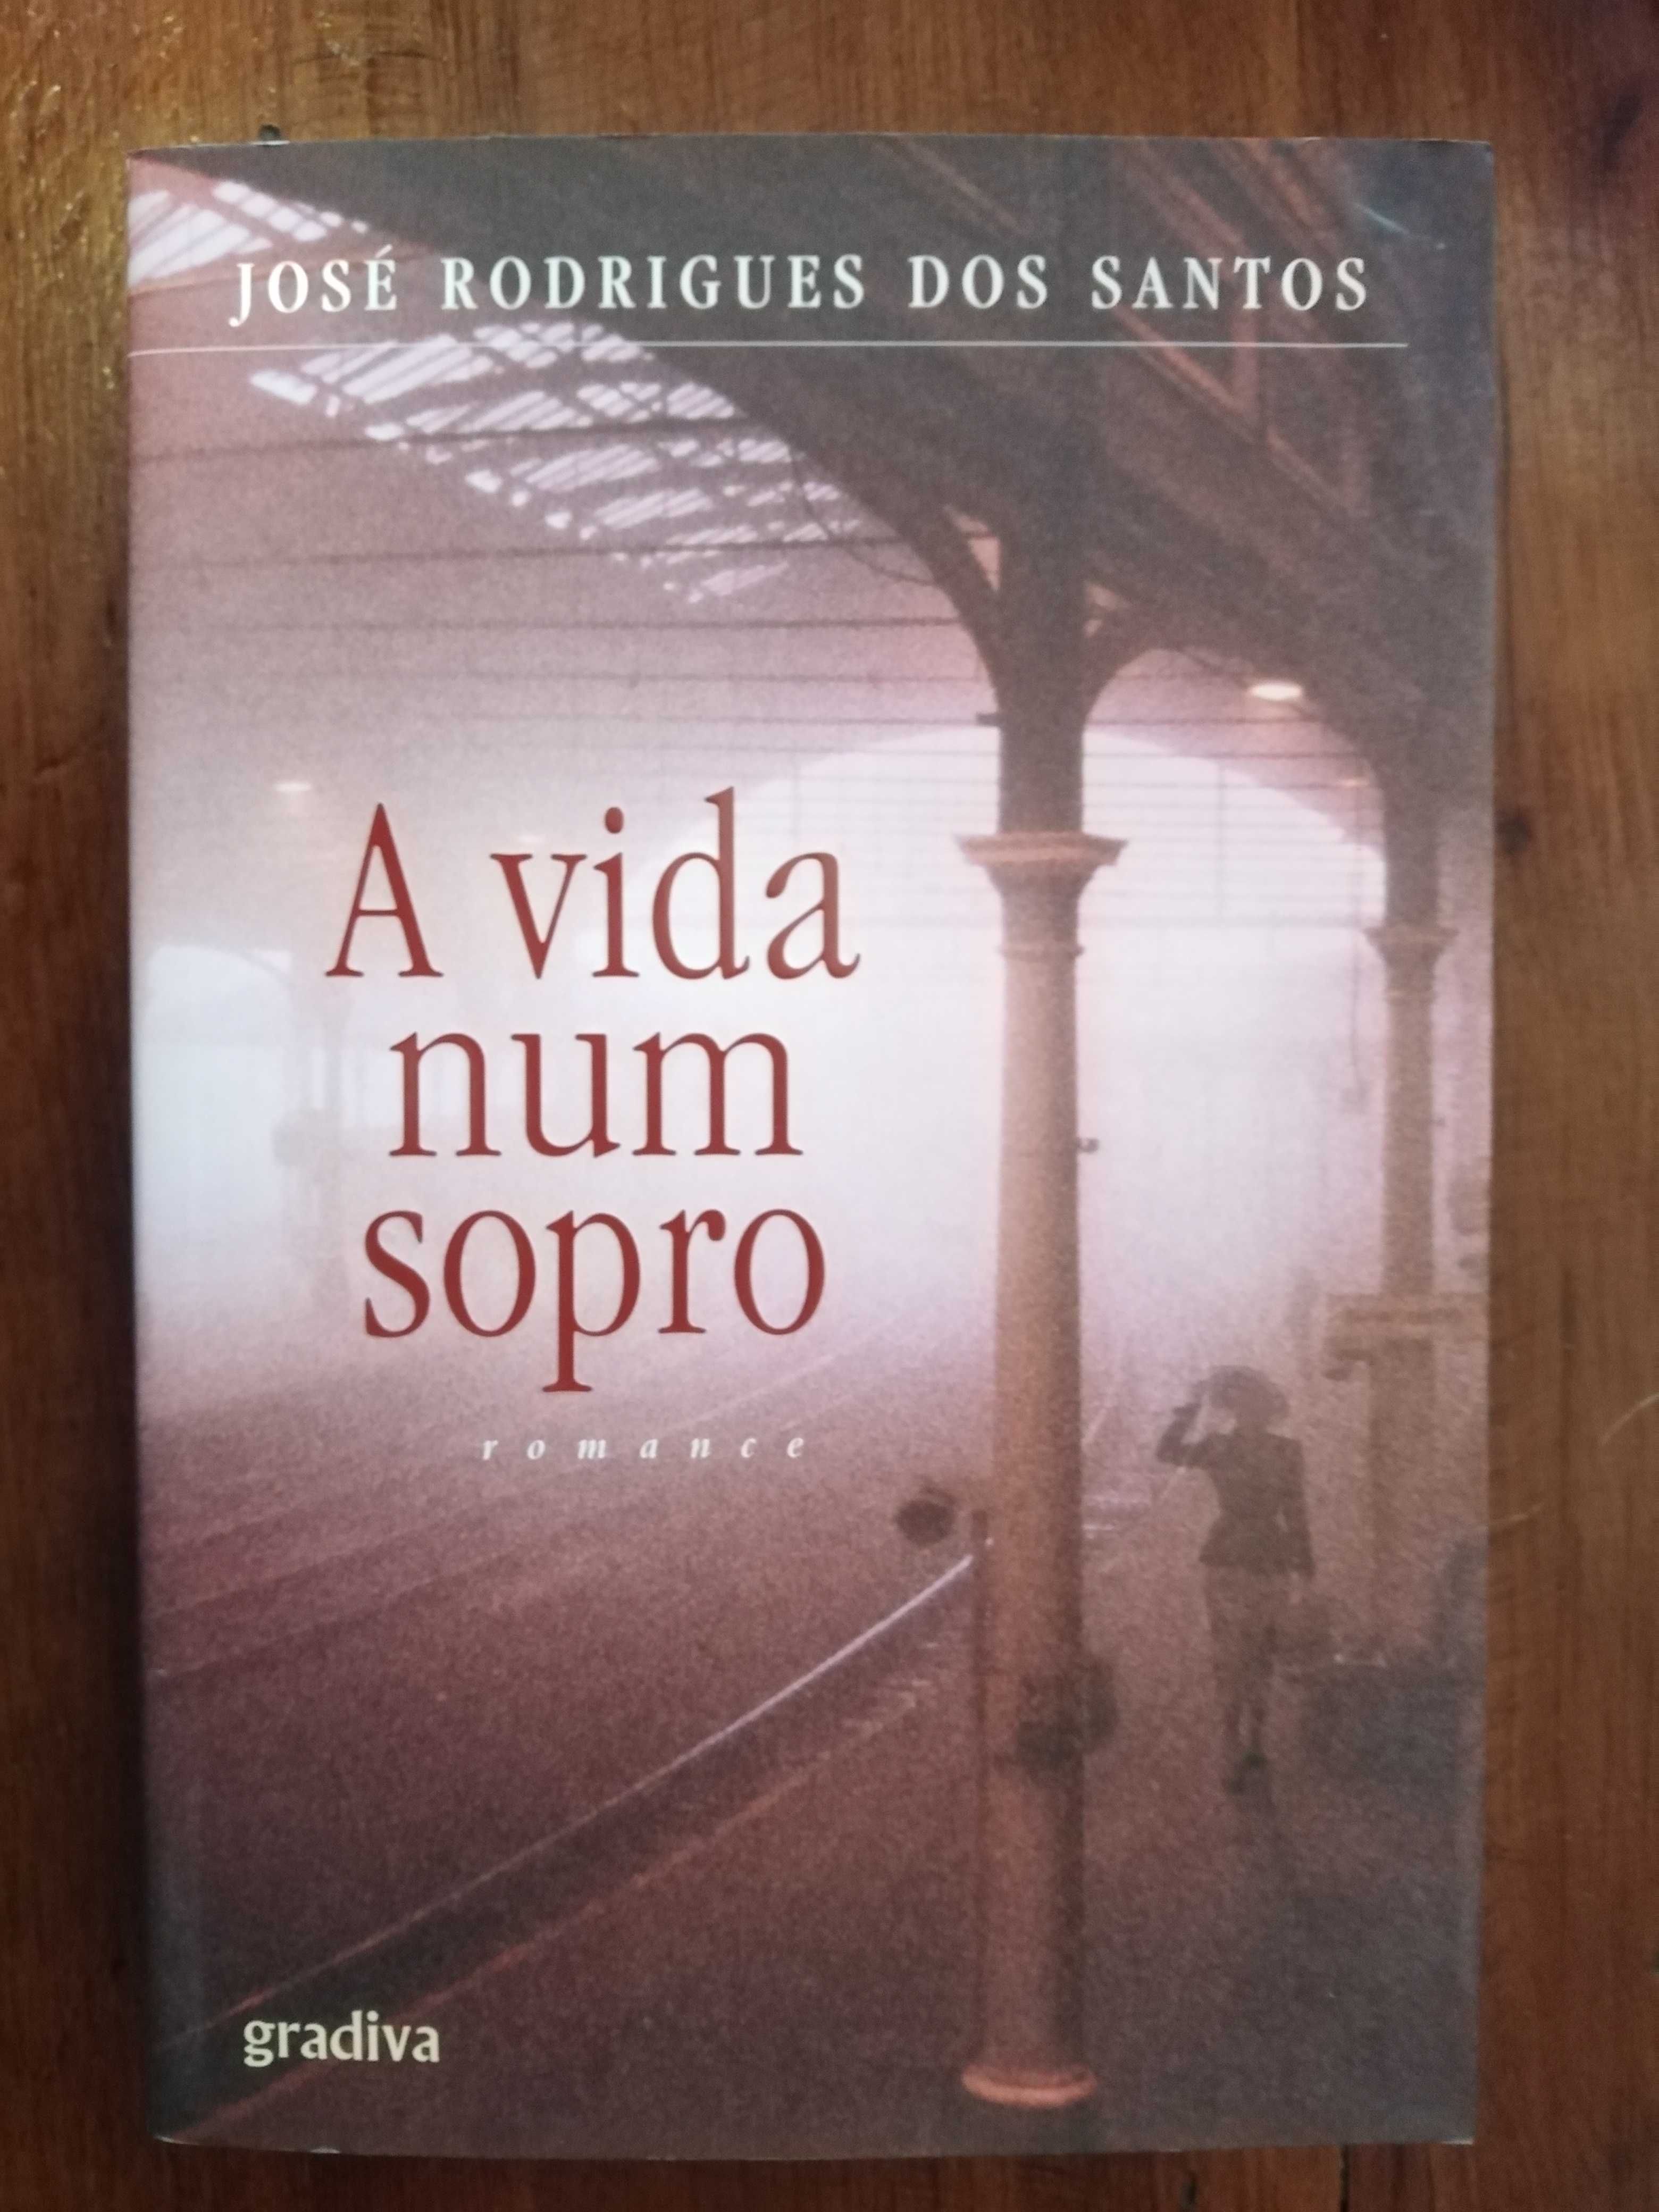 José Rodrigues dos Santos - A vida num sopro